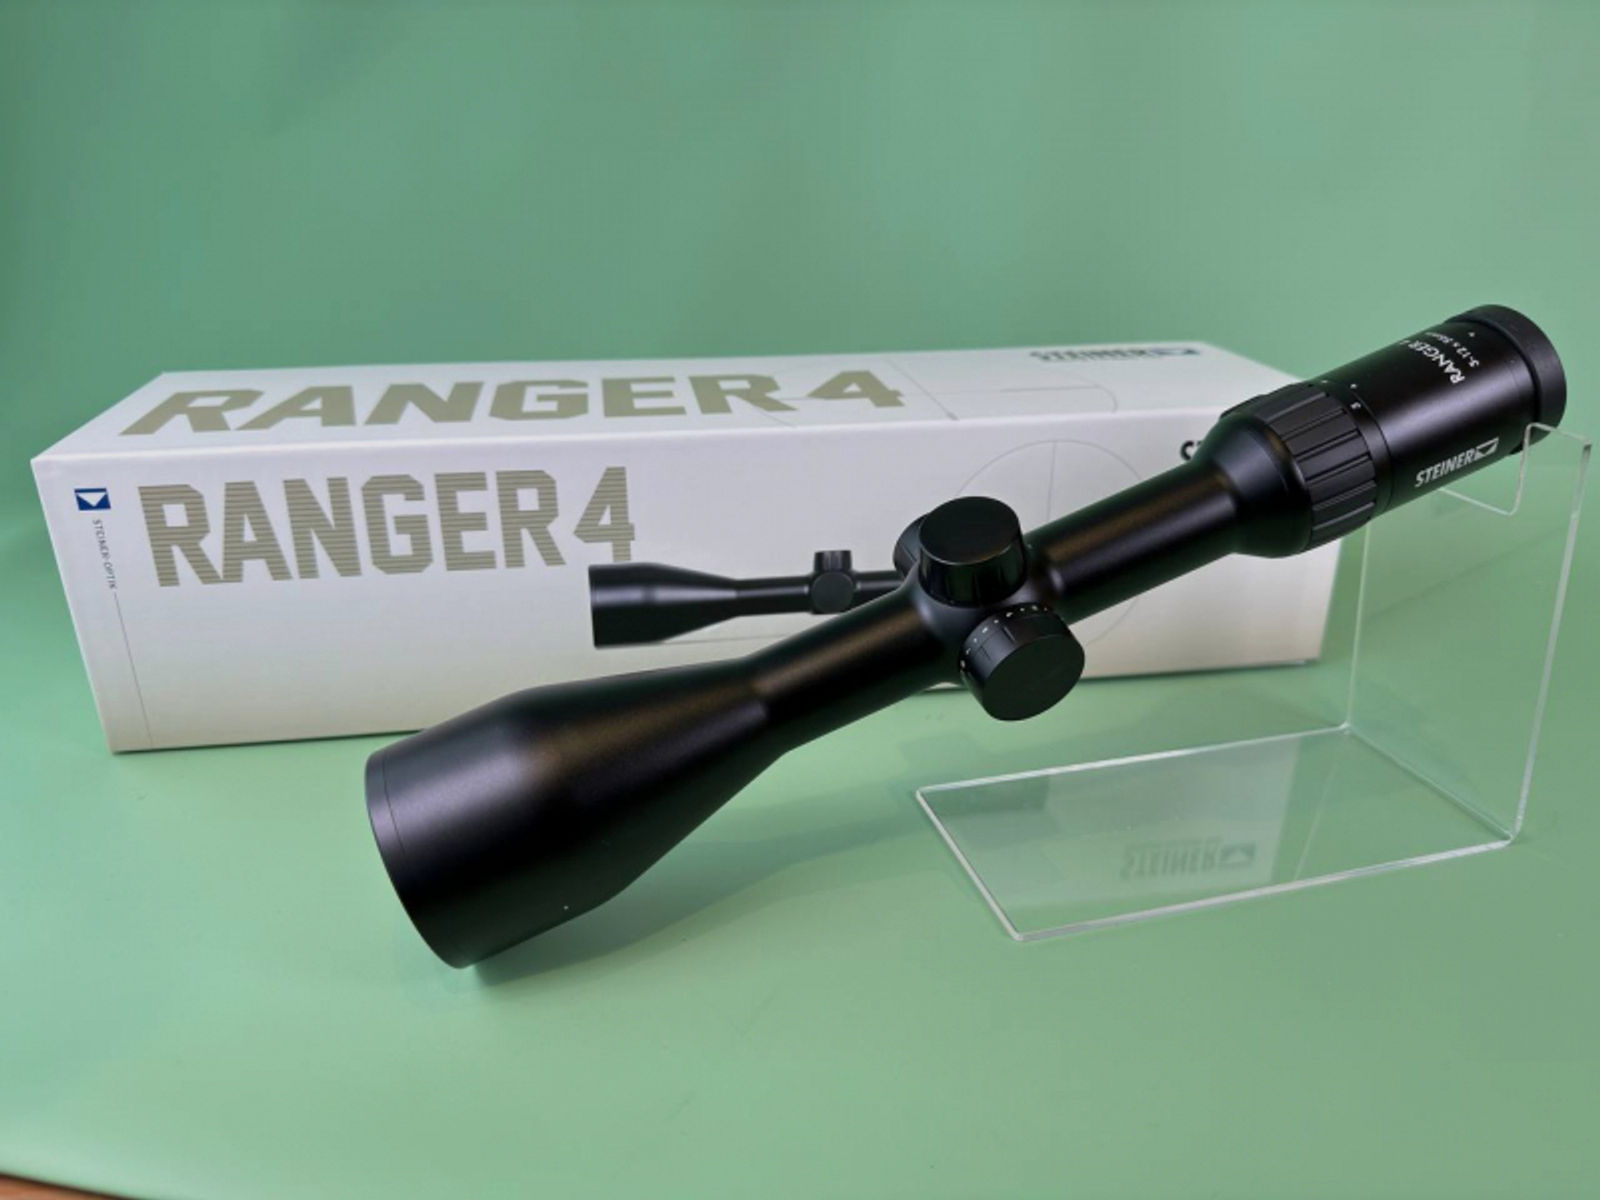 Steiner Ranger 4 Zielfernrohr Zielfernrohr 3-12x56 *Waffenhandel Ahnert* *Neu*